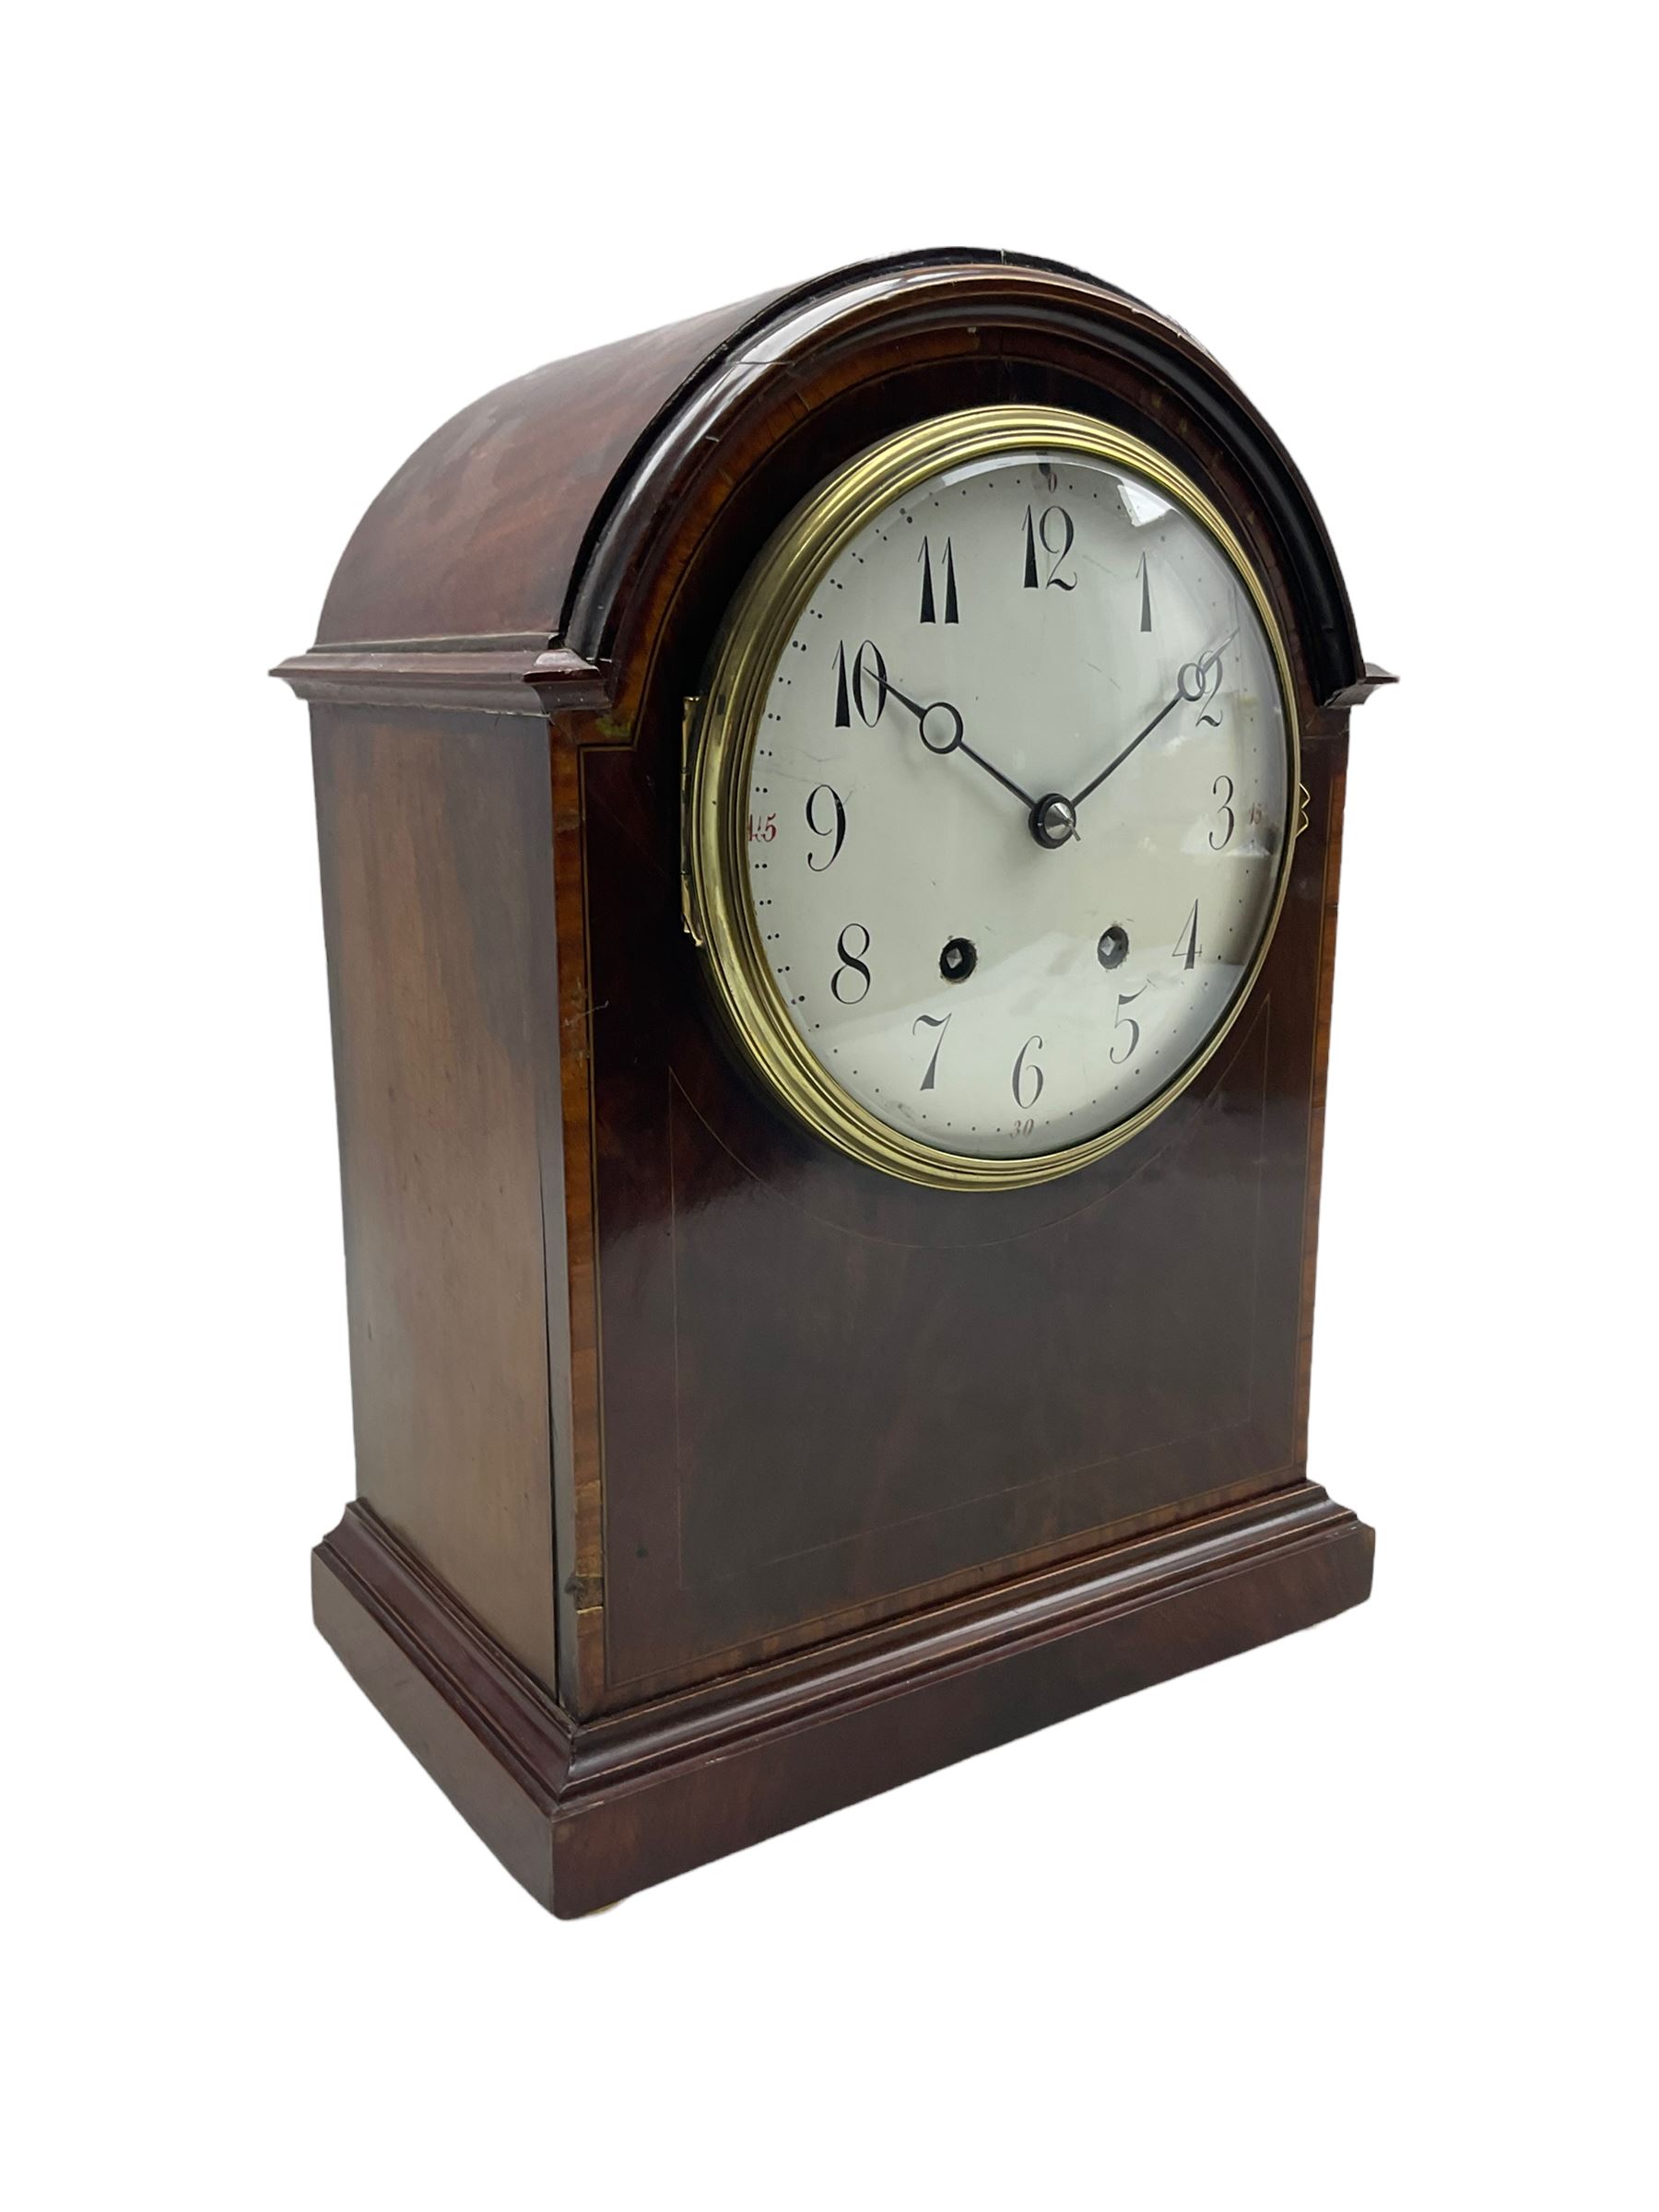 French - Edwardian mahogany 8-day mantle clock - Image 2 of 3